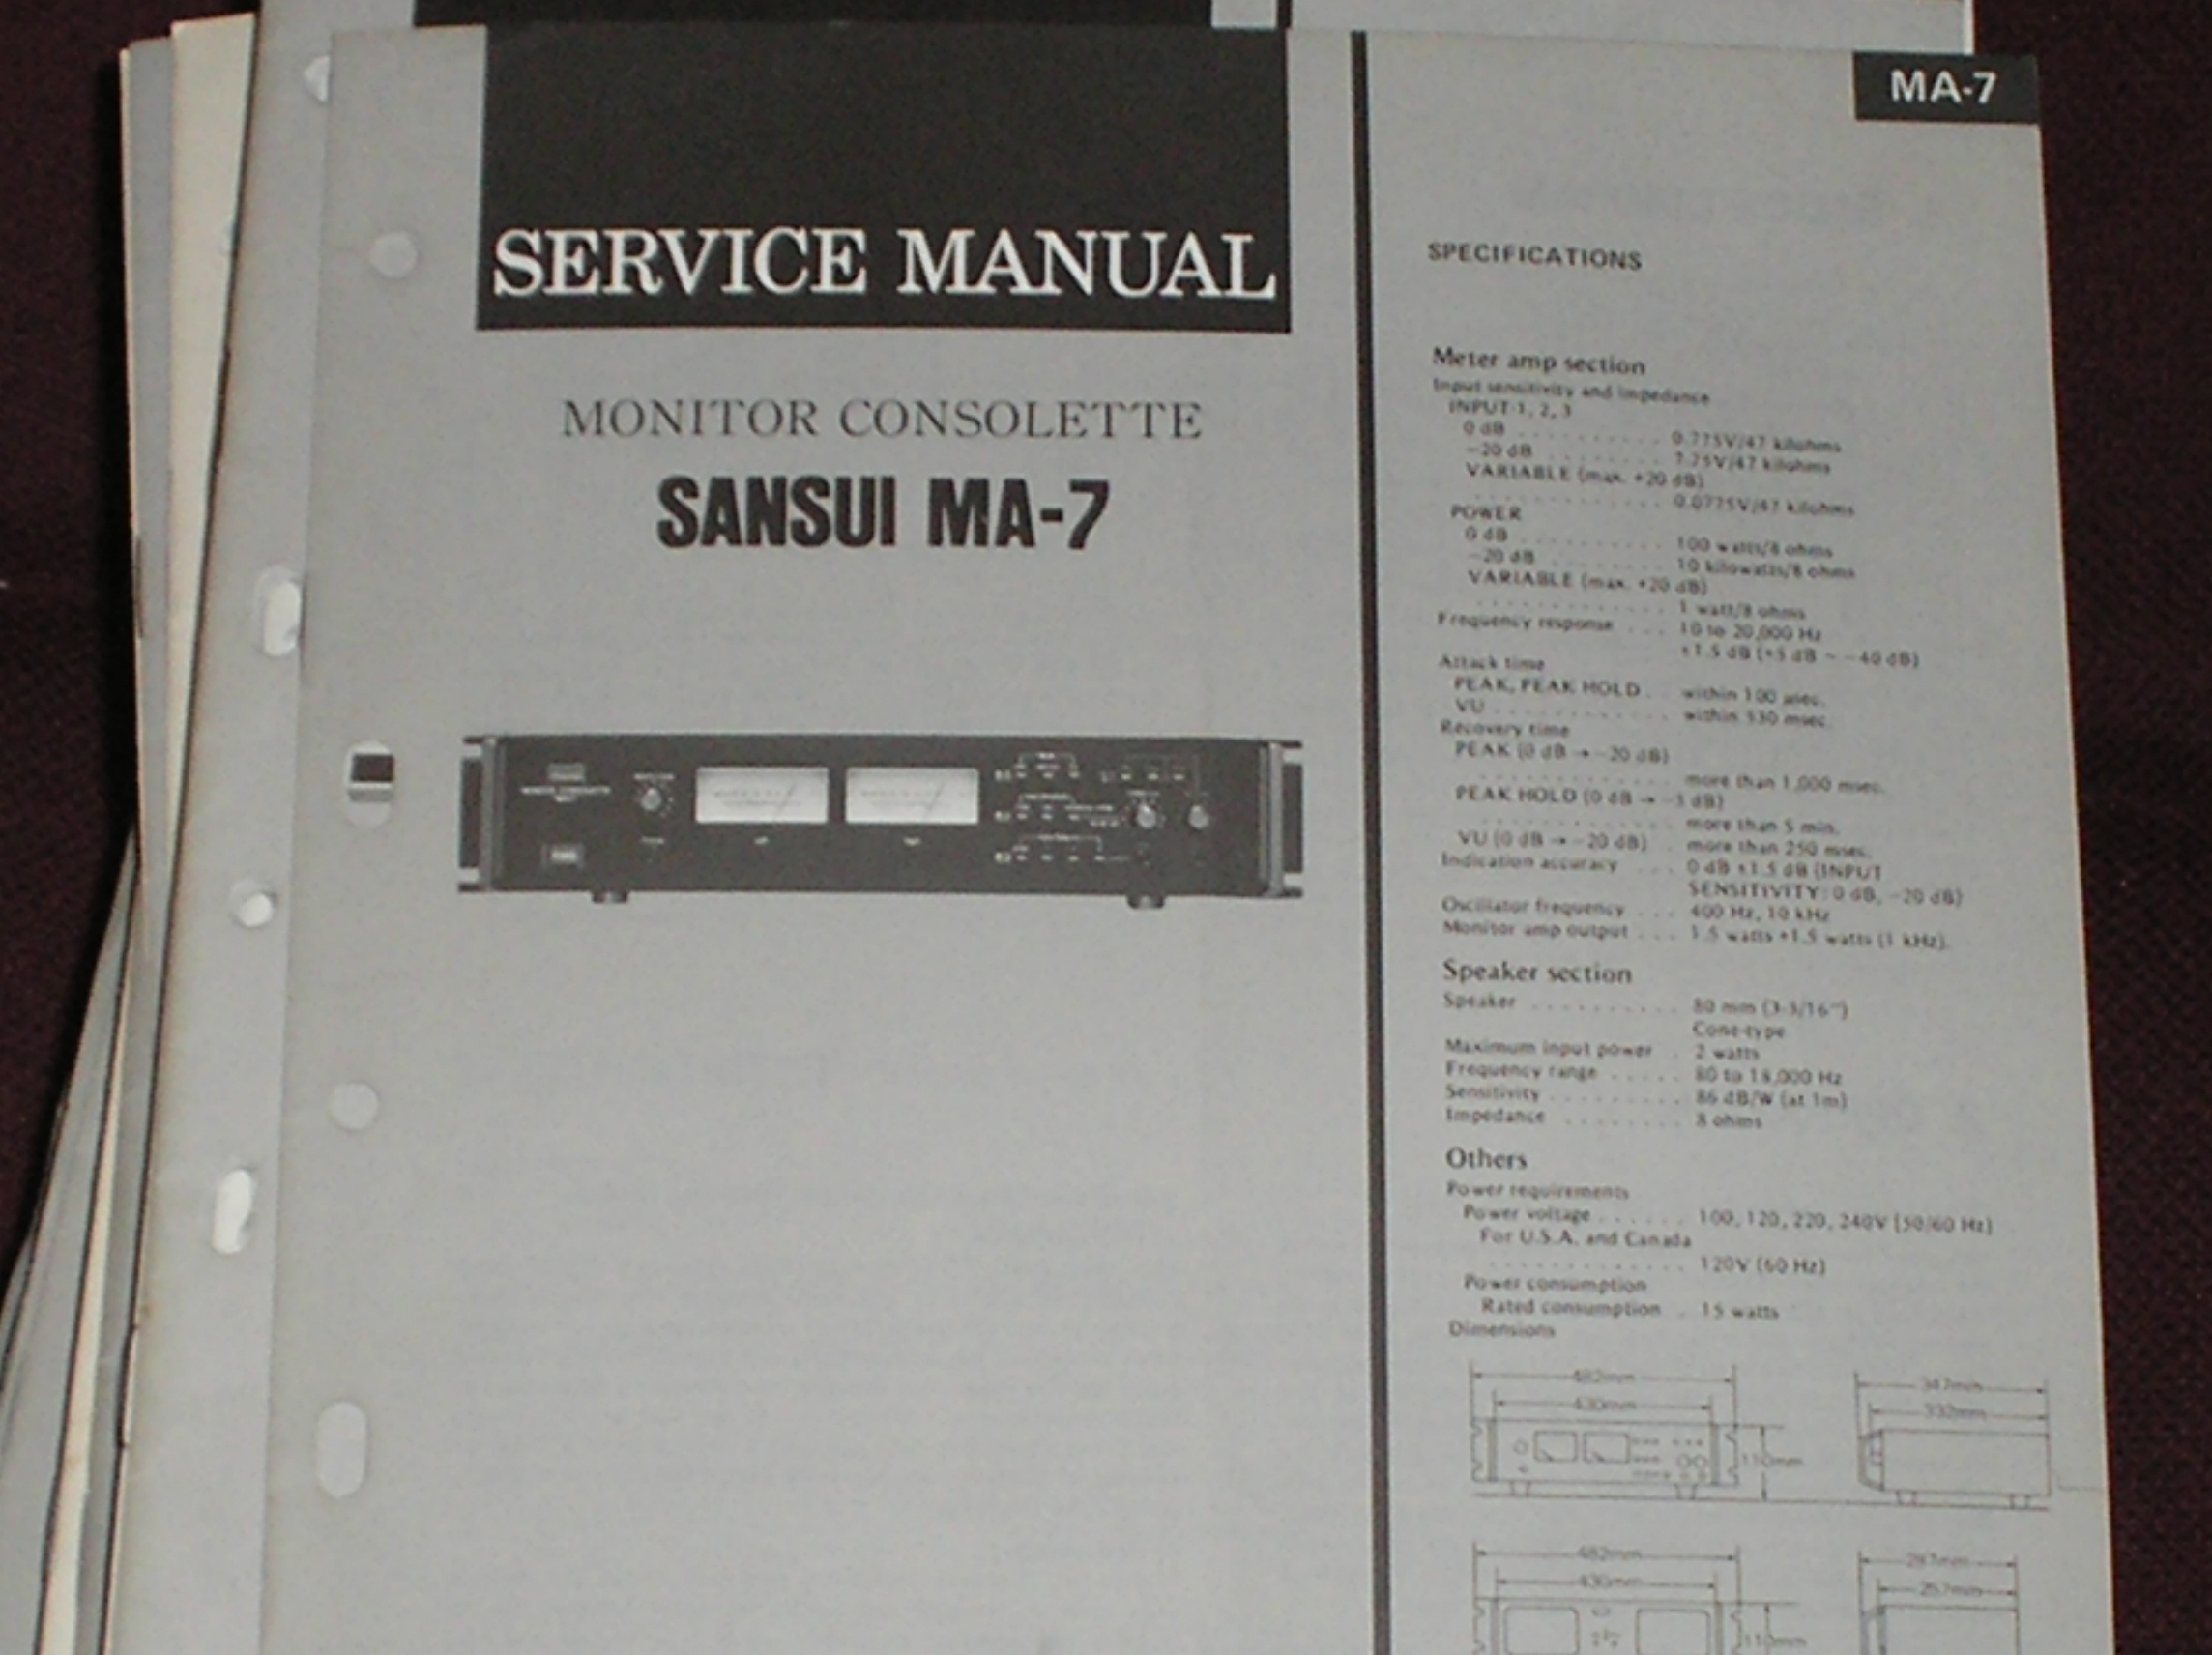 MA-7 Monitor Consolette Service Manual